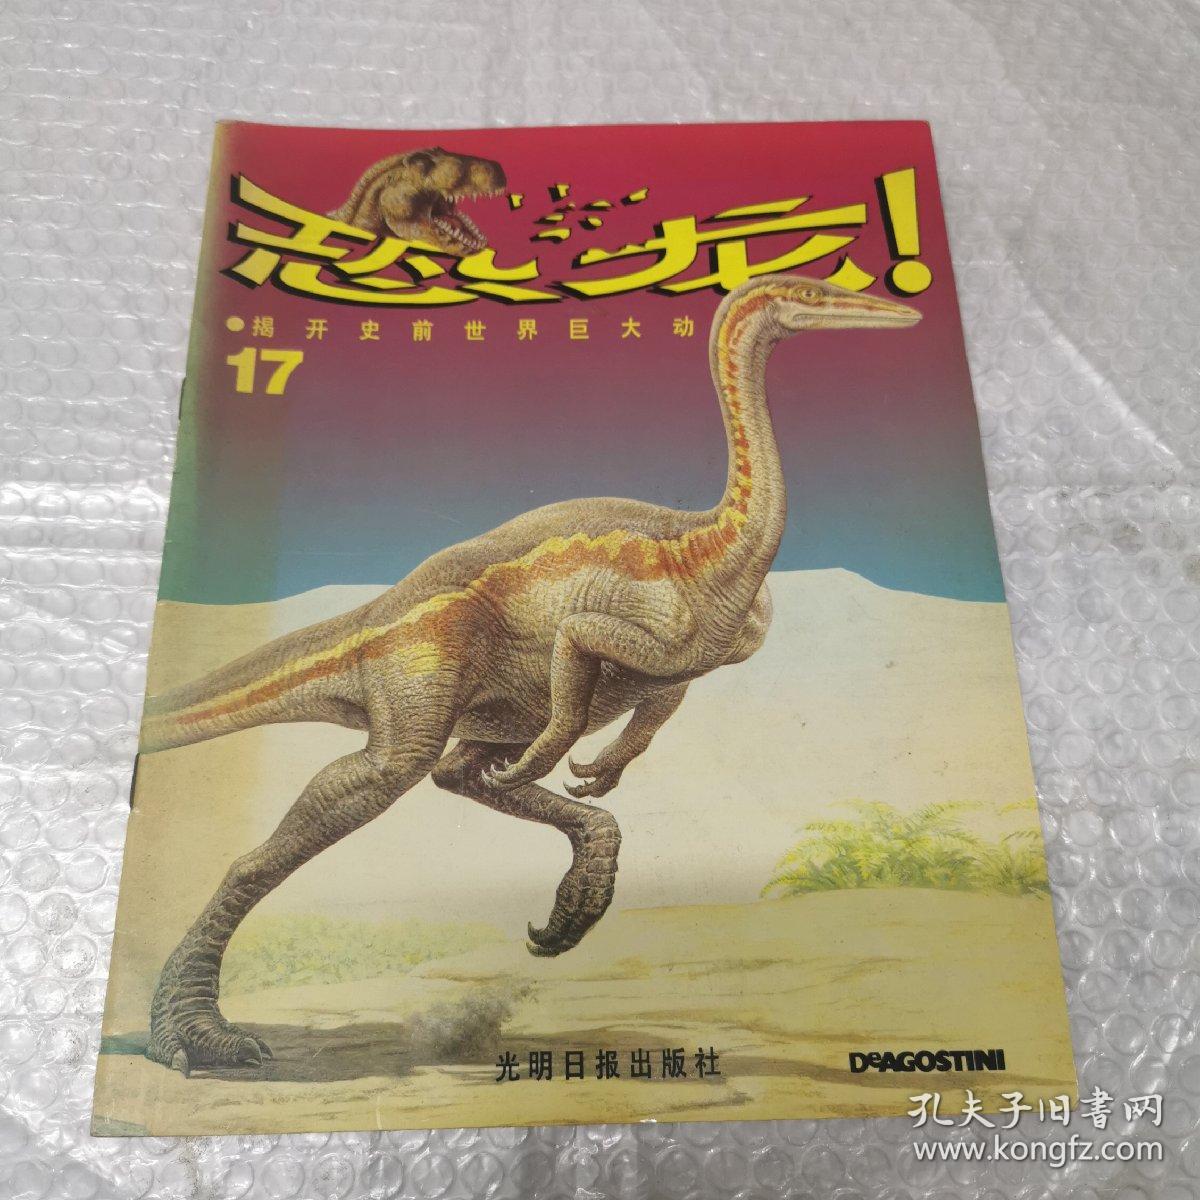 恐龙 揭开史前世界巨大动物的奥秘 17